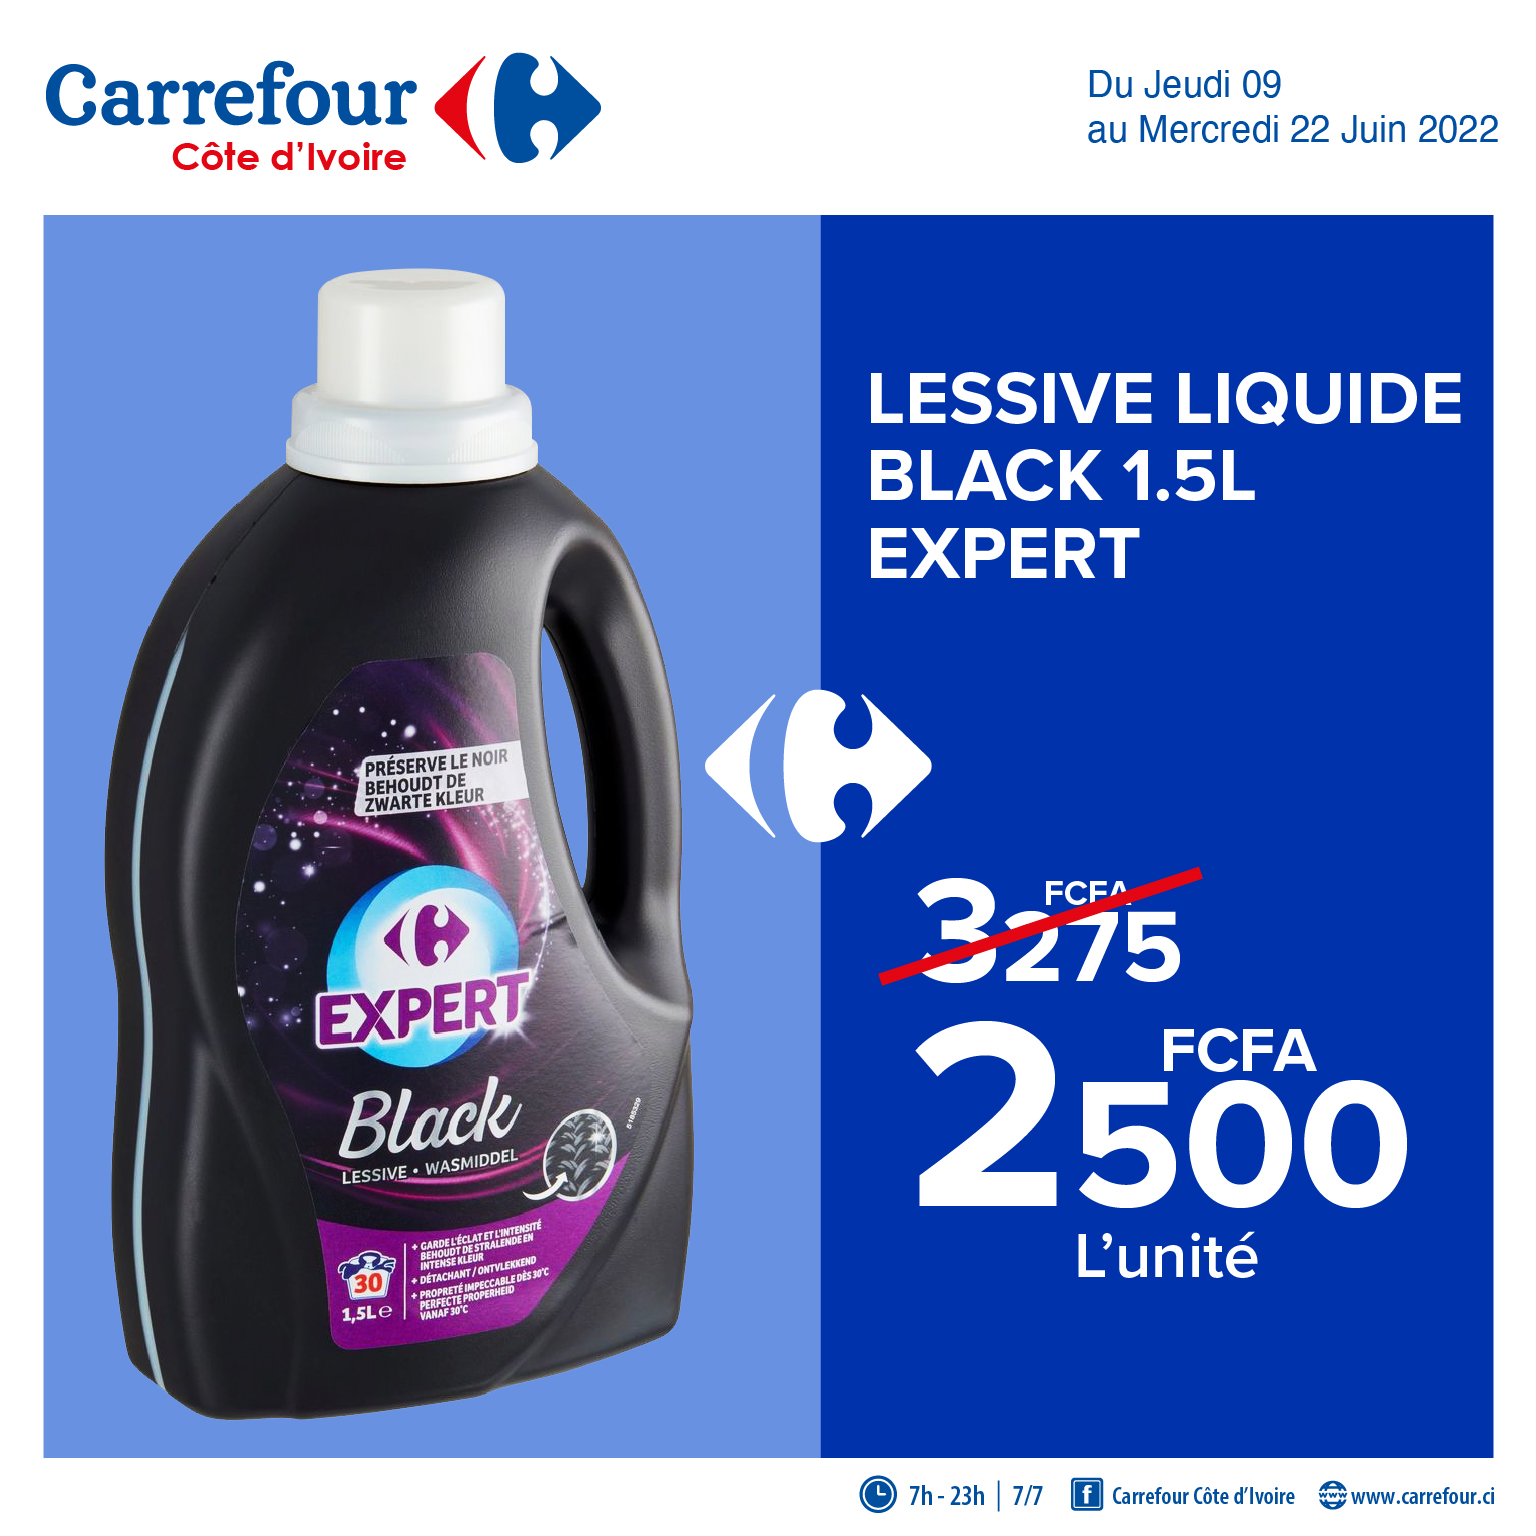 Lessive liquide black 1,5L expert